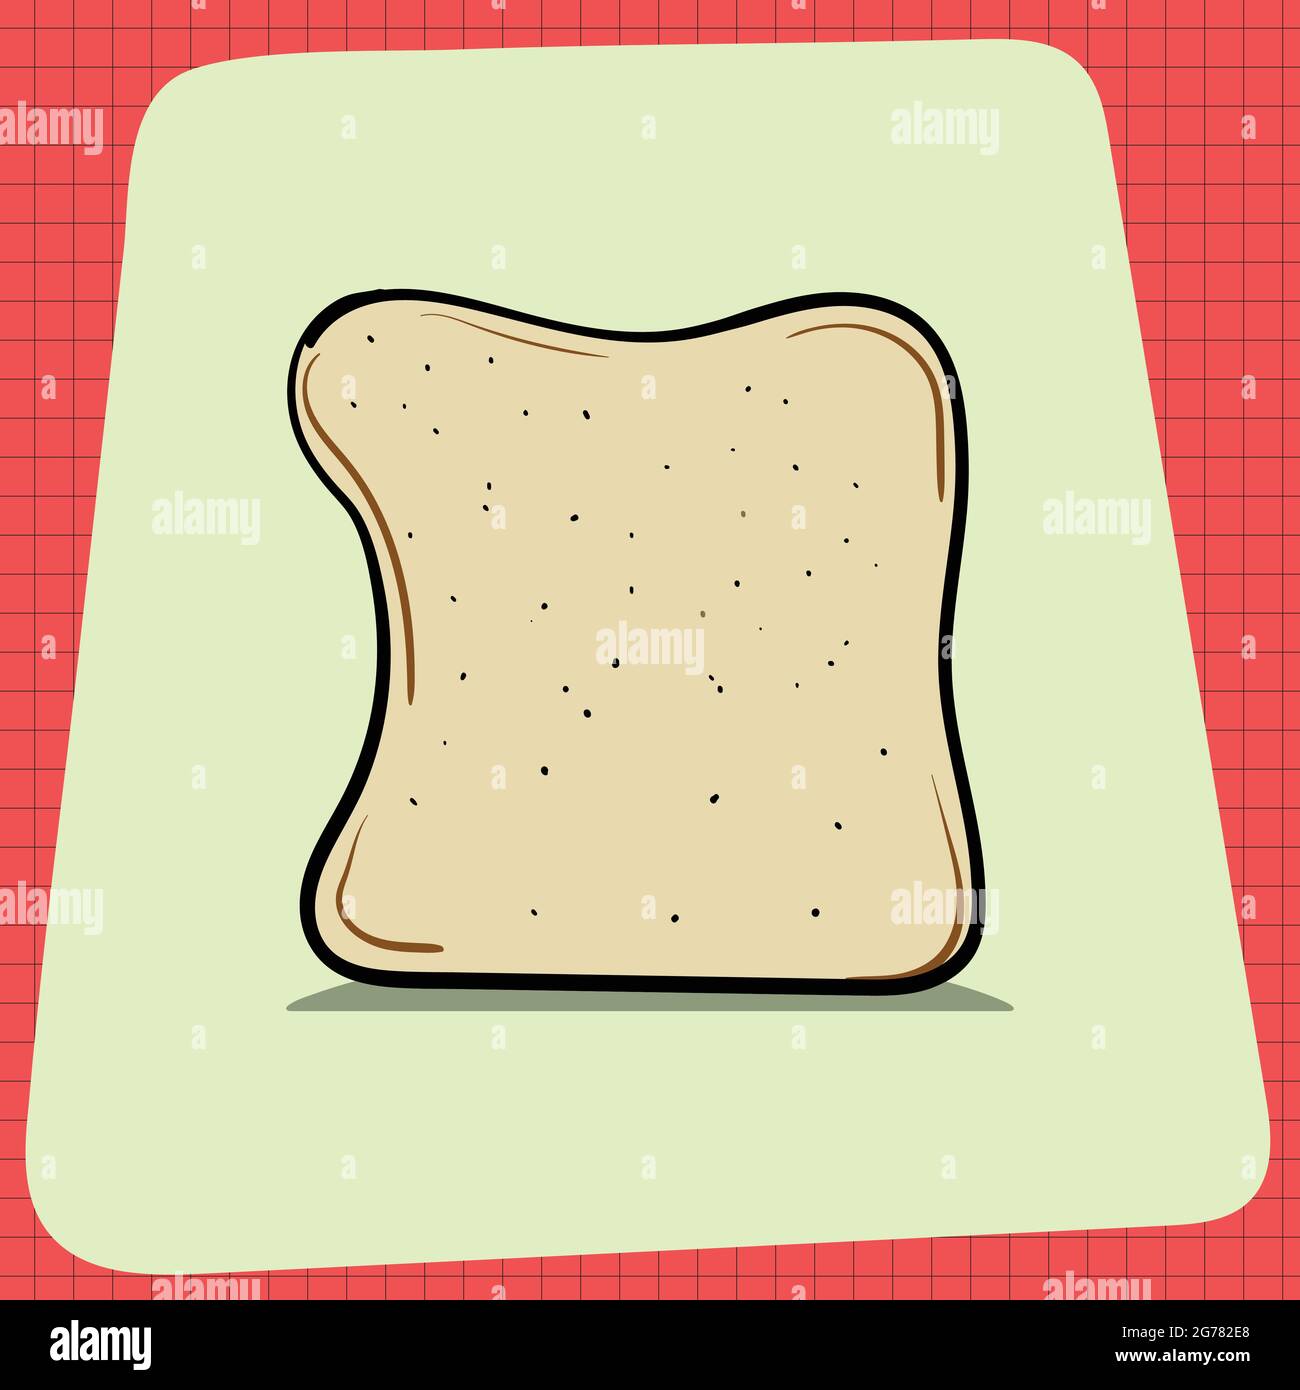 Fetta di pane Pan con ombra. Tutti i giorni la colazione casalinghi. Icone di cibo per la progettazione di menu. Elementi grafici vettoriali isolati su sfondo bianco. Illustrazione Vettoriale